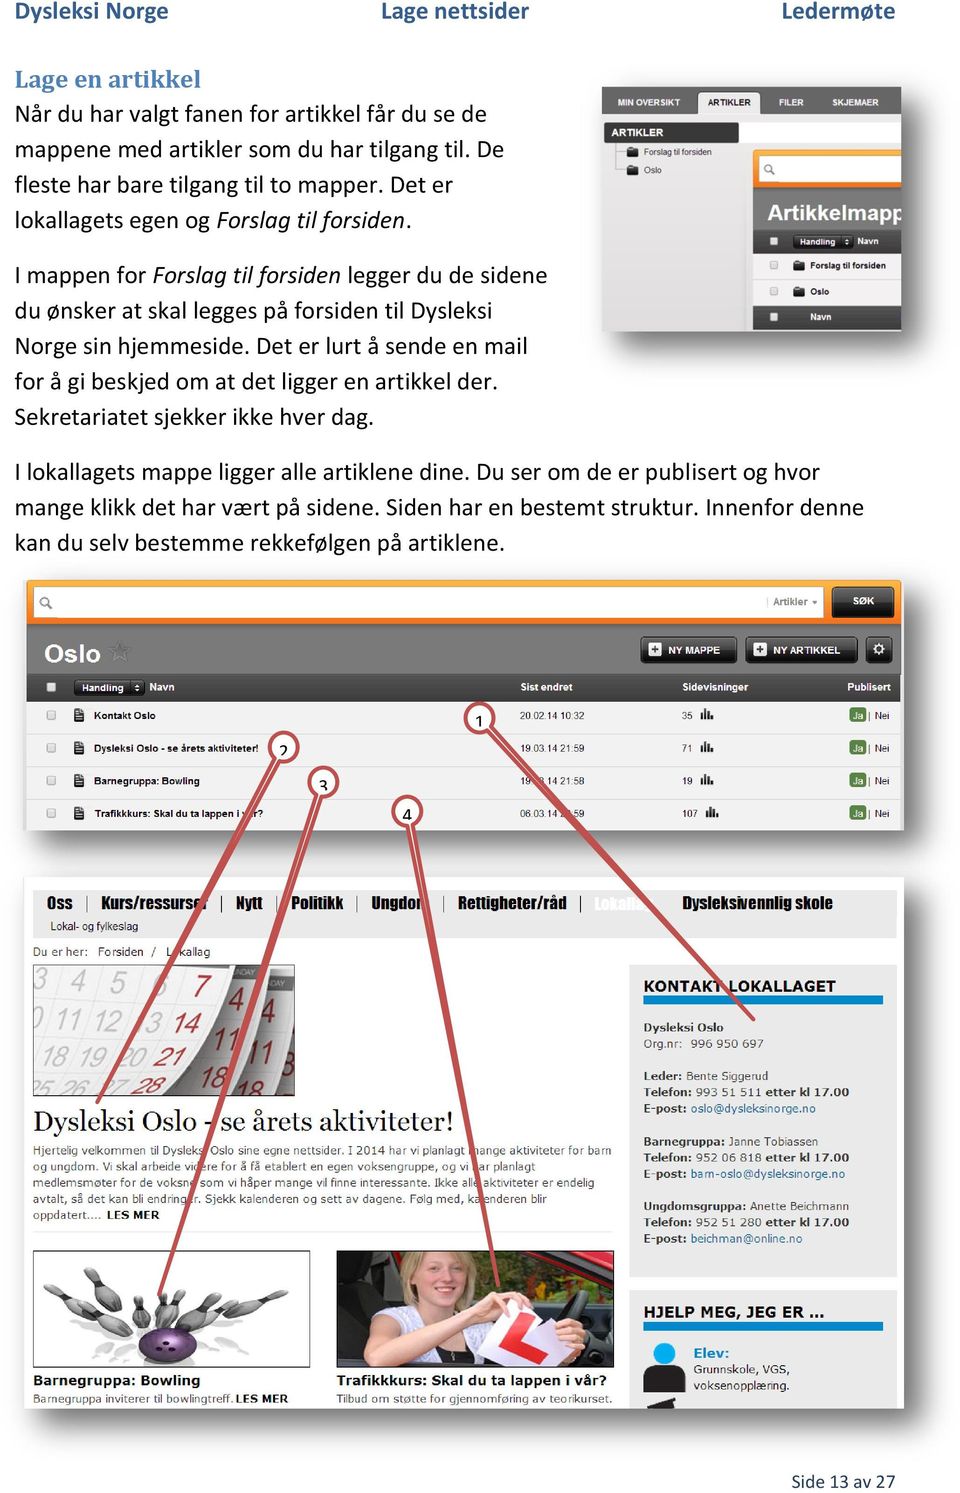 I mappen for Forslag til forsiden legger du de sidene du ønsker at skal legges på forsiden til Dysleksi Norge sin hjemmeside.